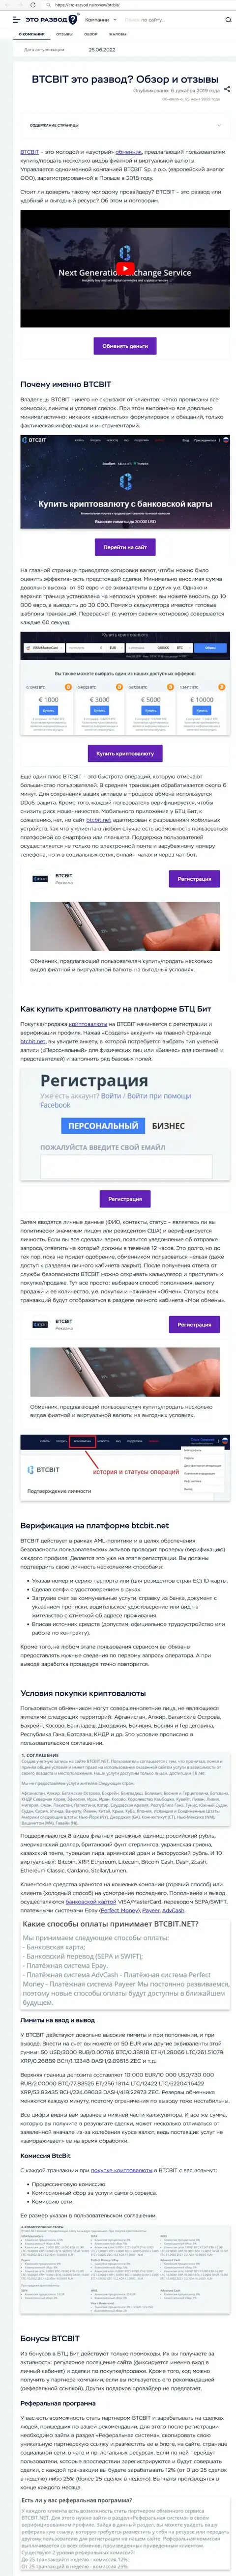 Разбор деятельности и условия для предоставления услуг онлайн-обменки BTCBit Net в обзорной статье на онлайн-сервисе Eto Razvod Ru